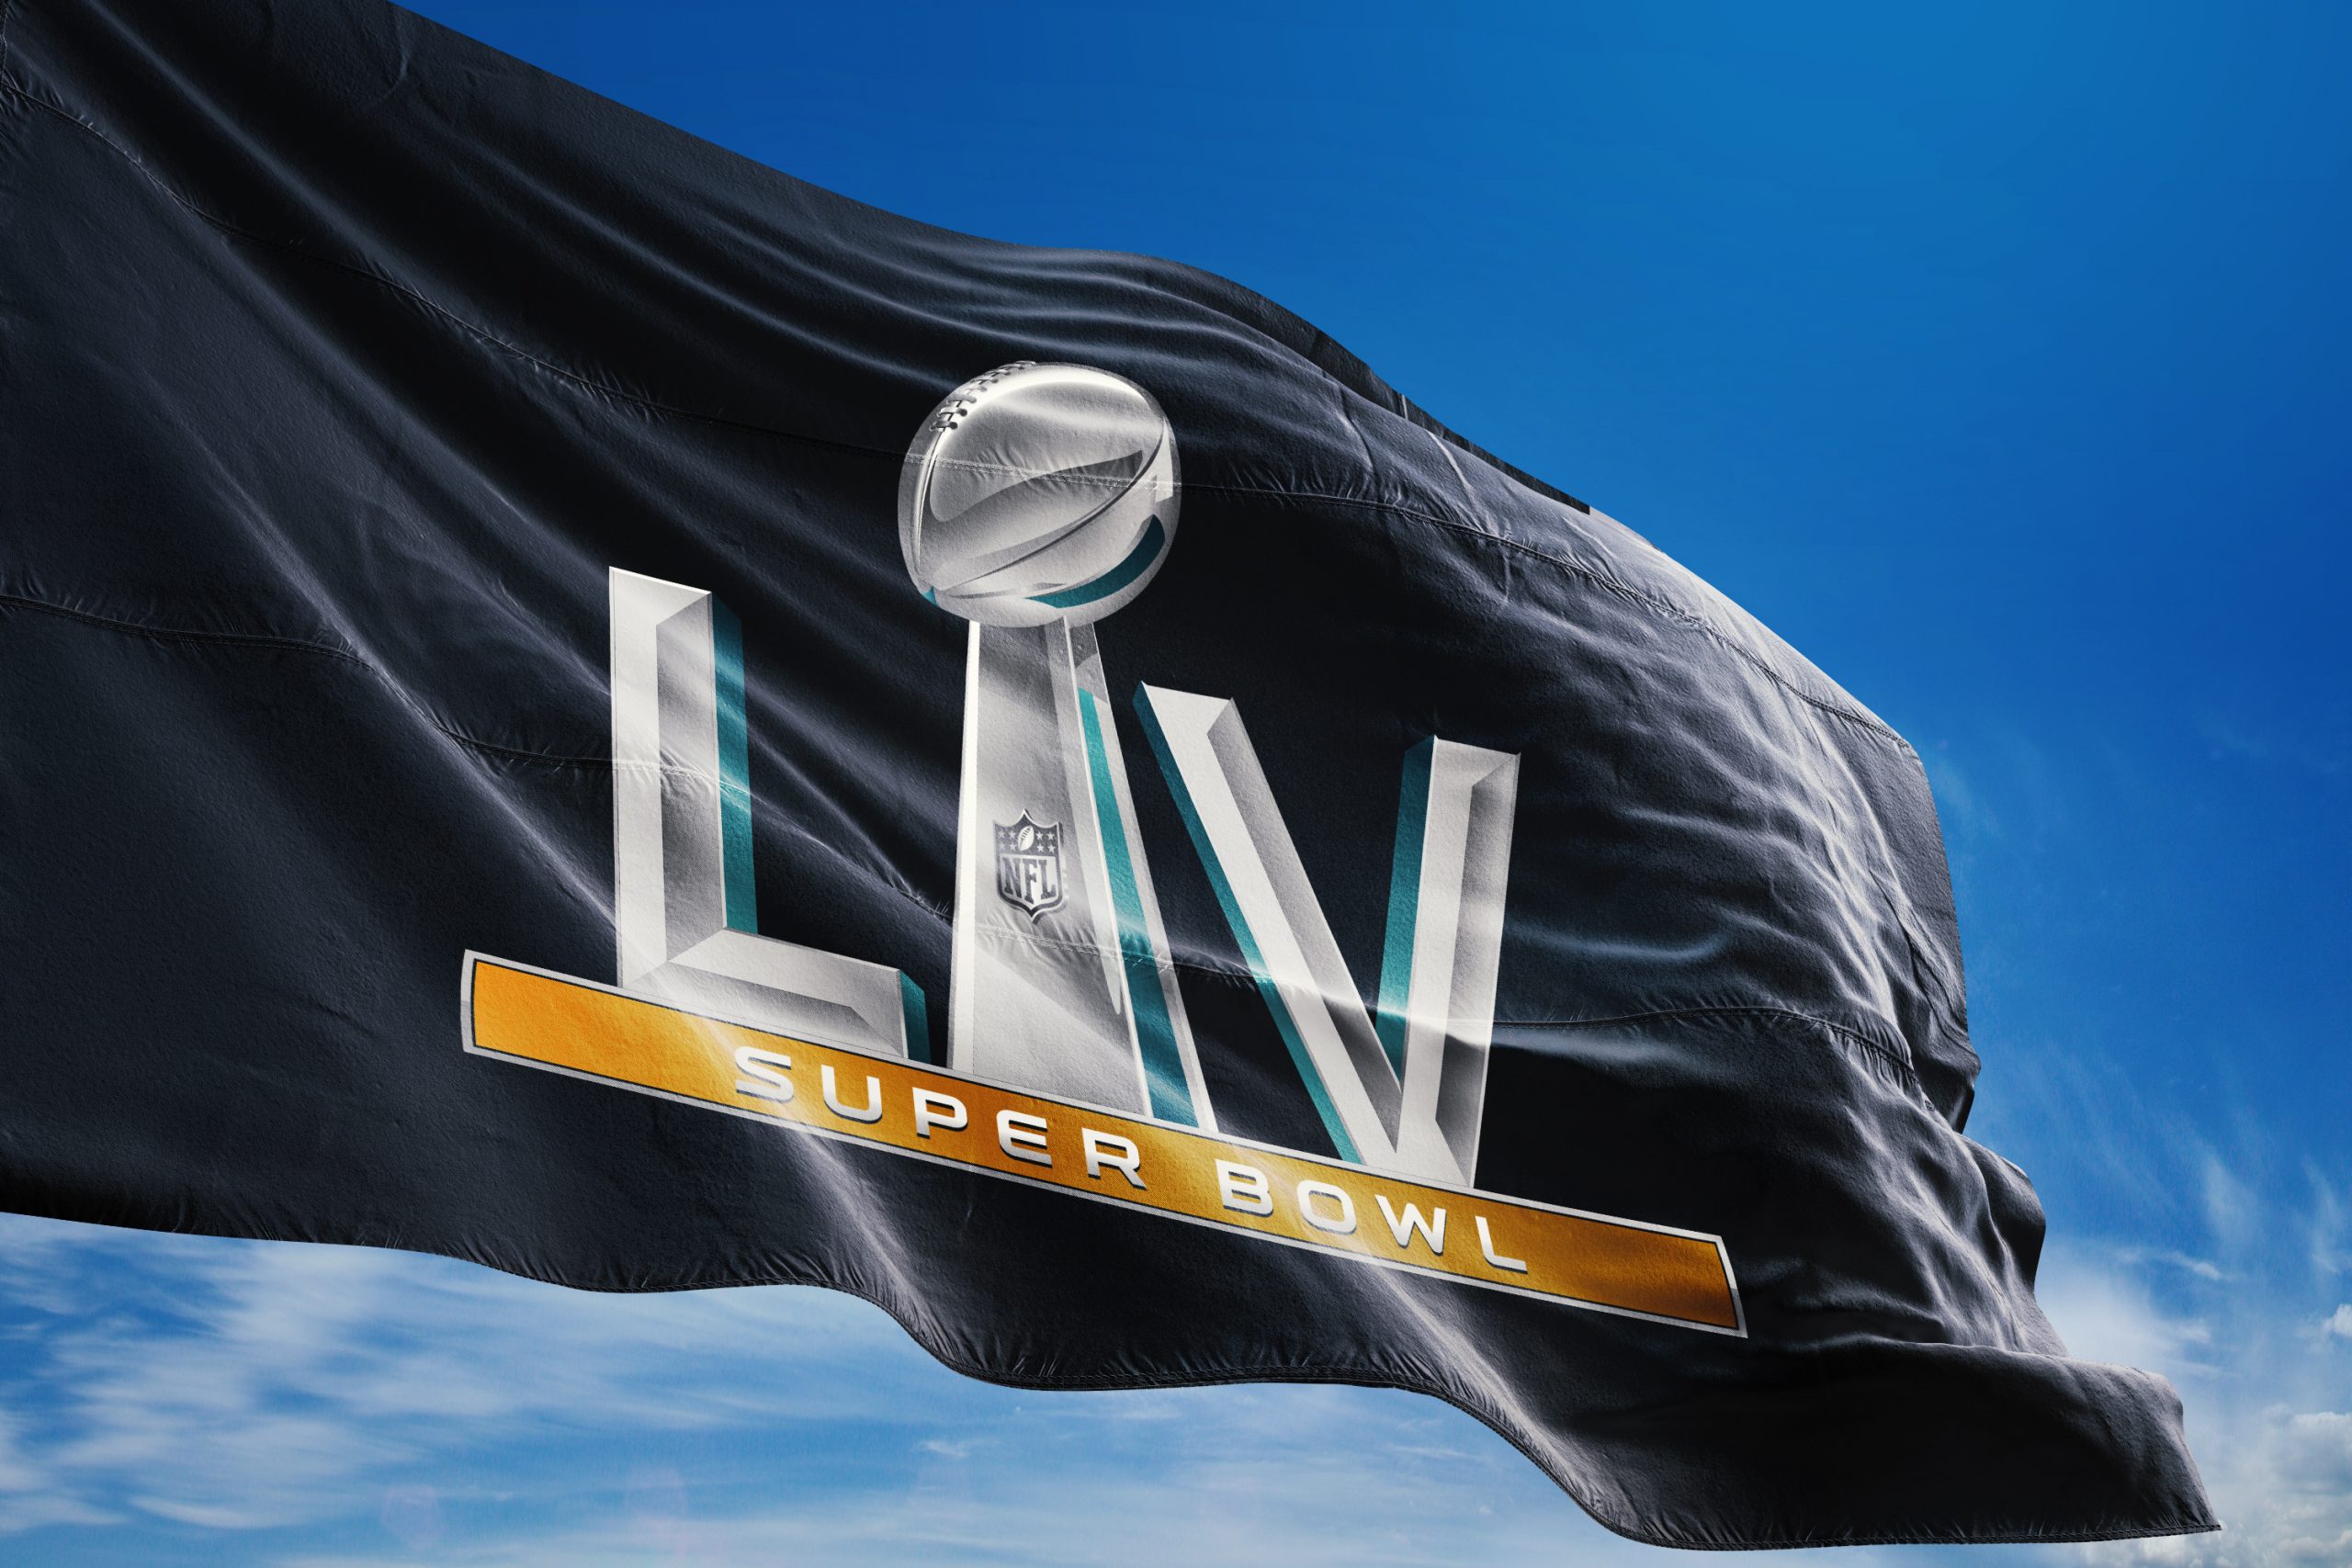 Super Bowl LV. Adobe Stock